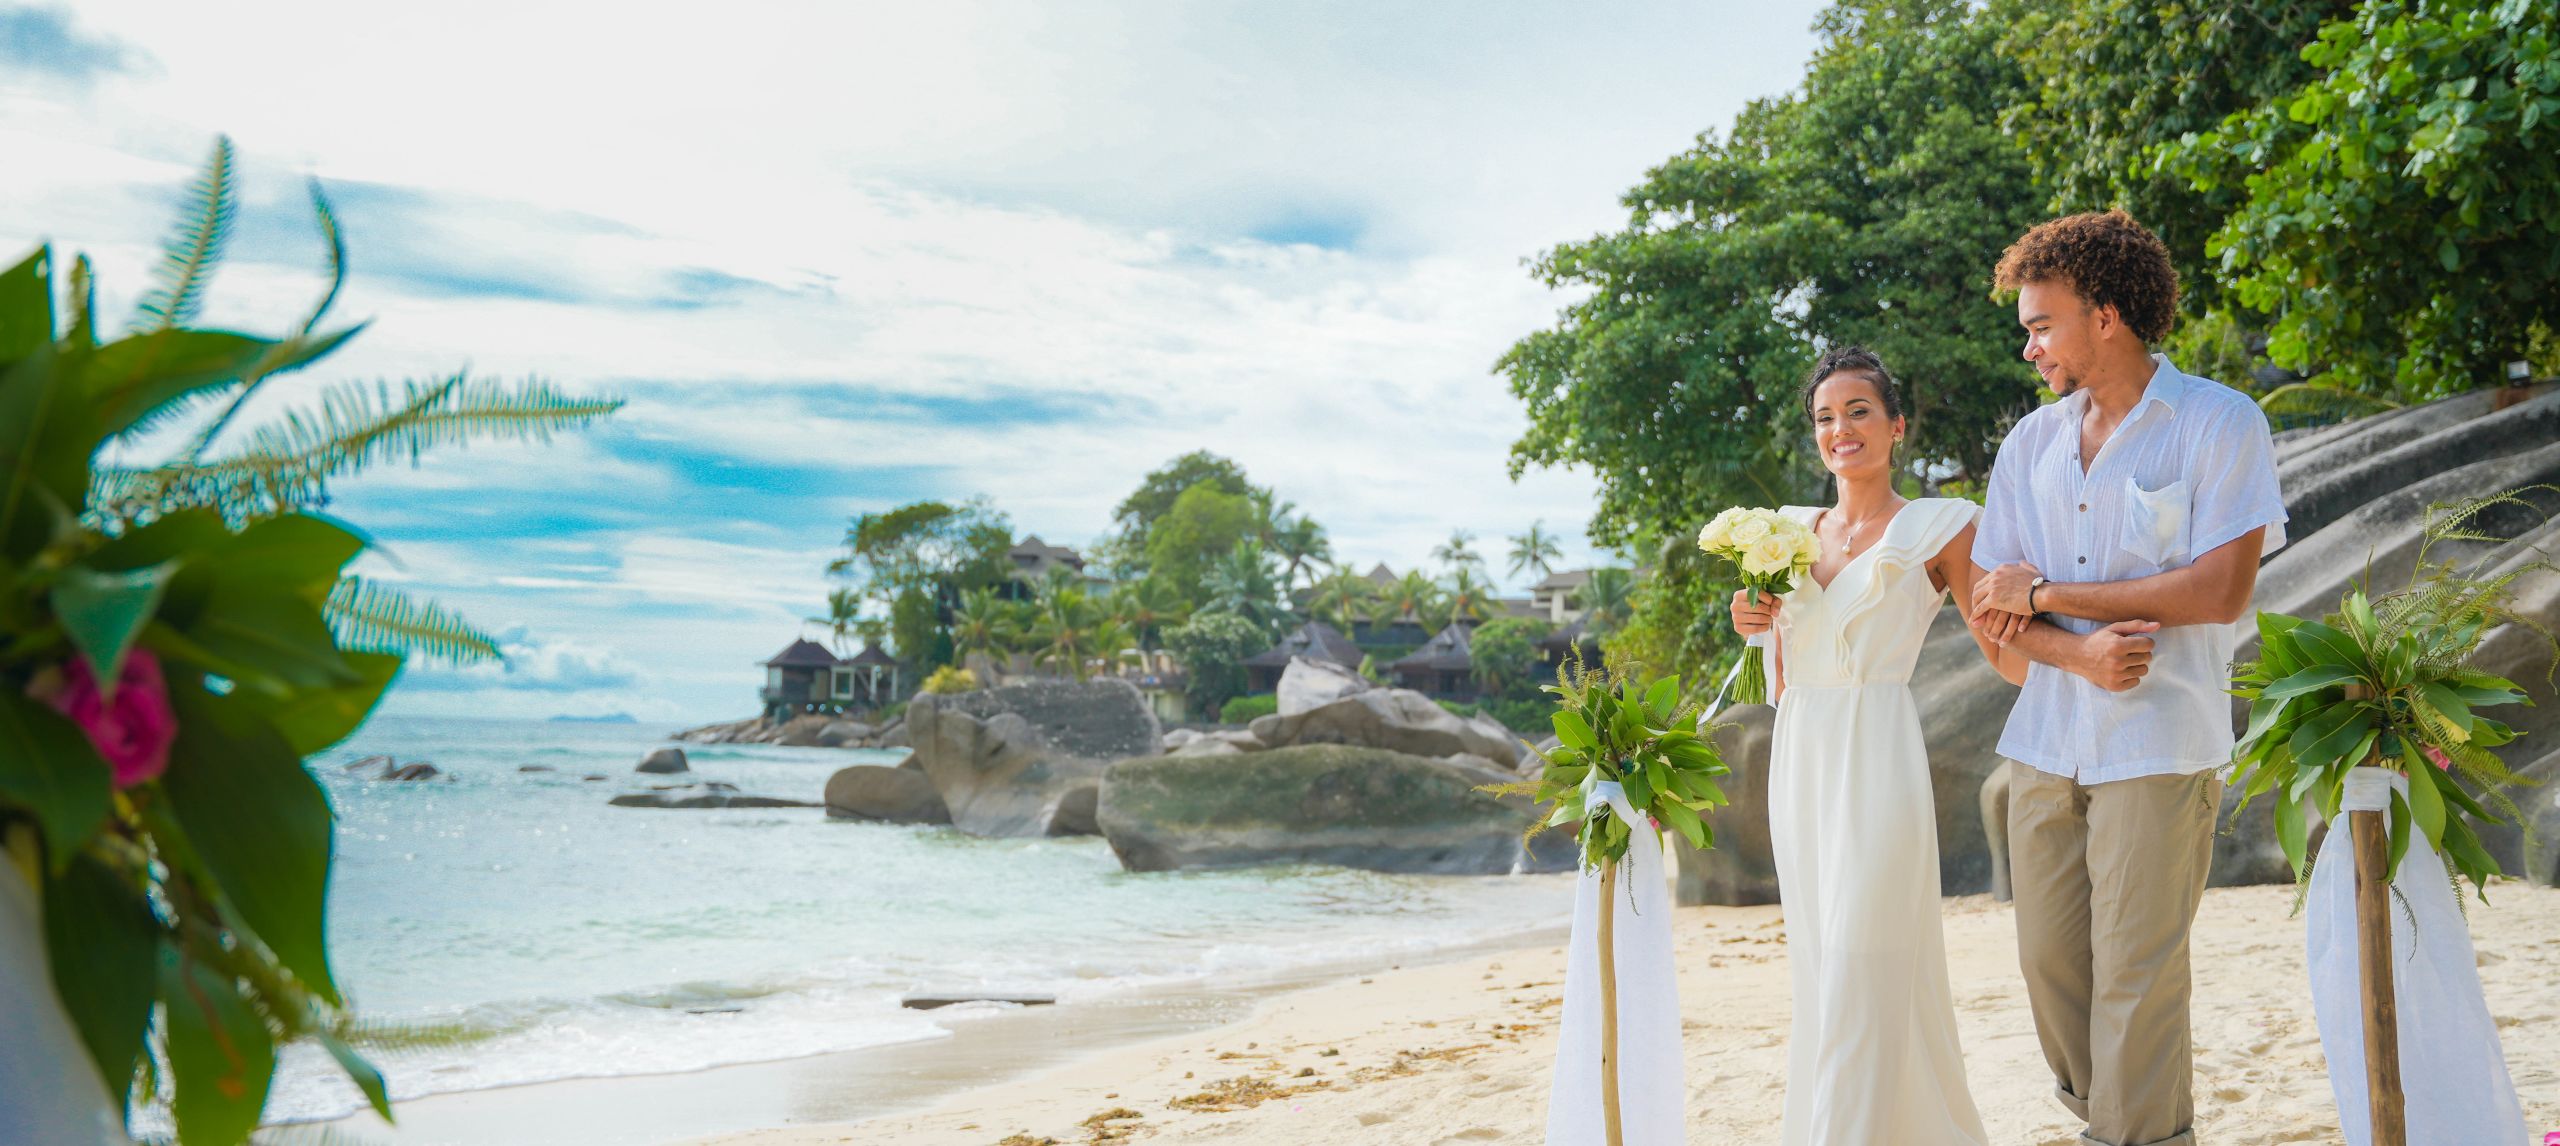 Eine Braut und ein Bräutigam spazieren die von Blumen gesäumte Insel am Strand entlang.